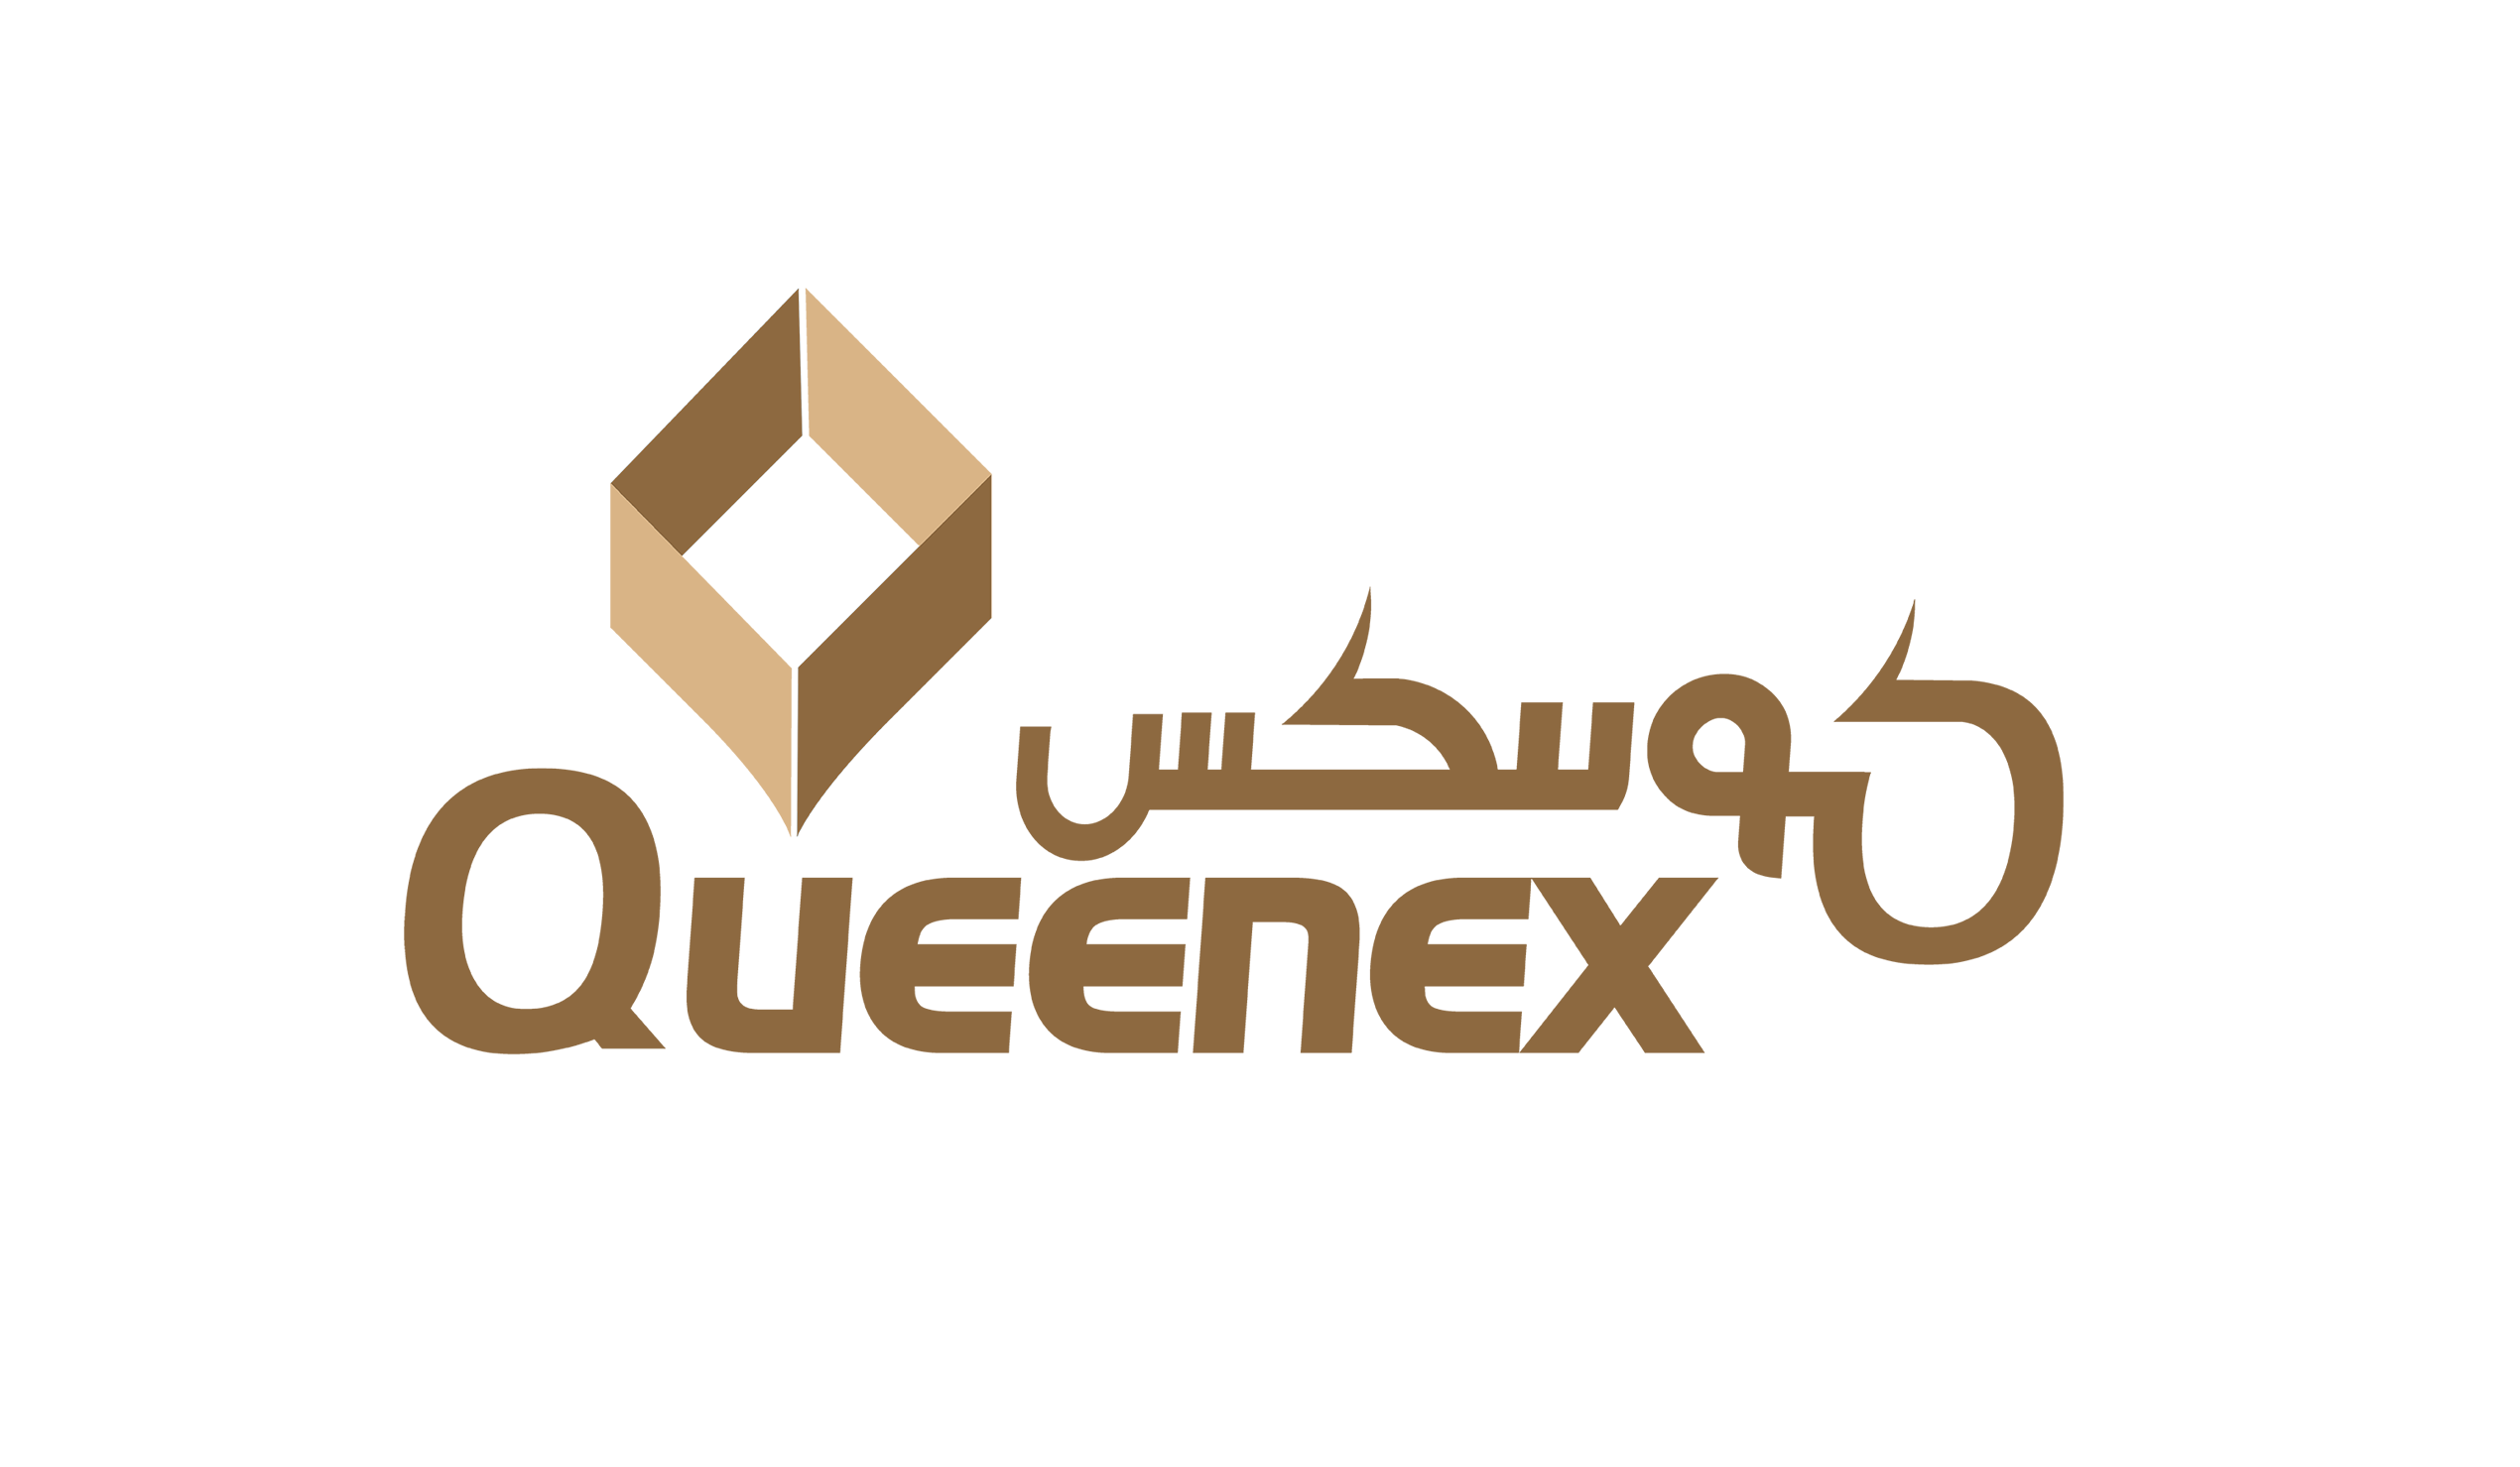 QCCF Queenex Corrugated Carton Factory